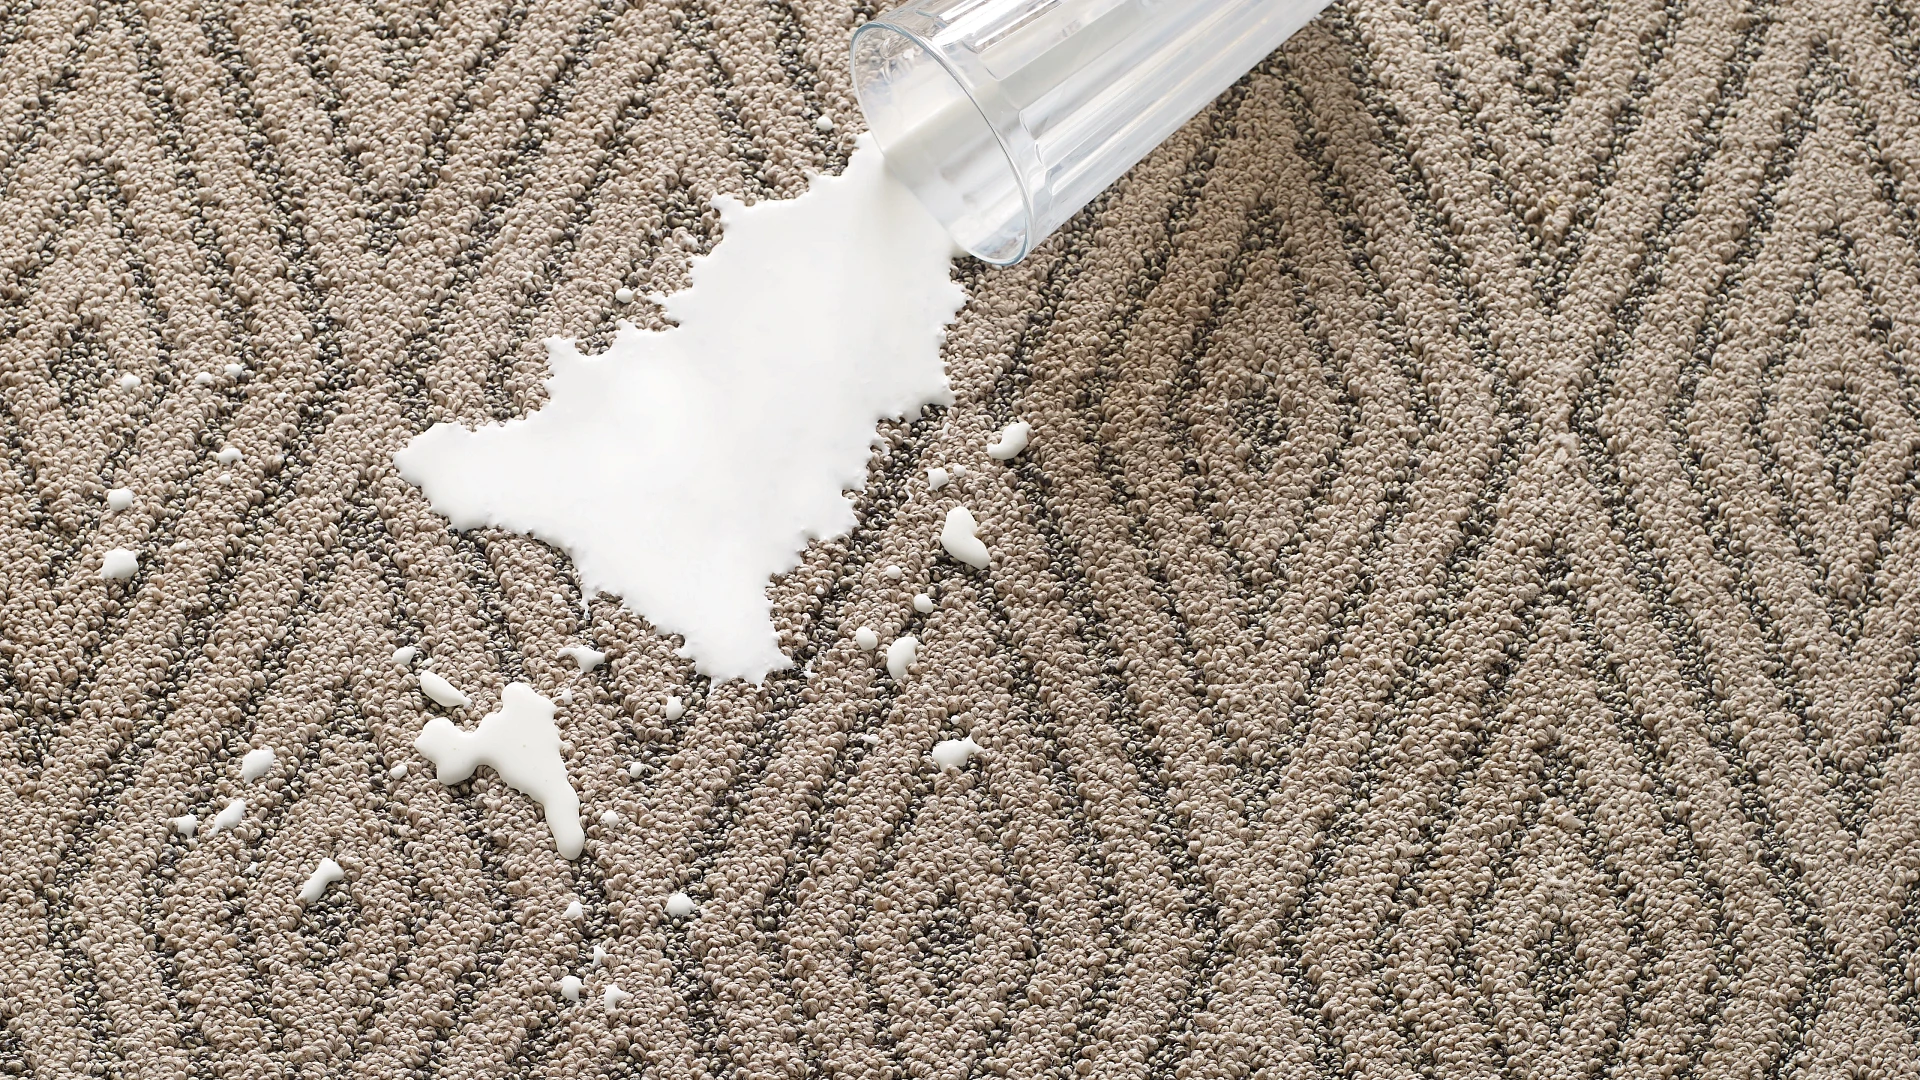 spilt milk on carpet